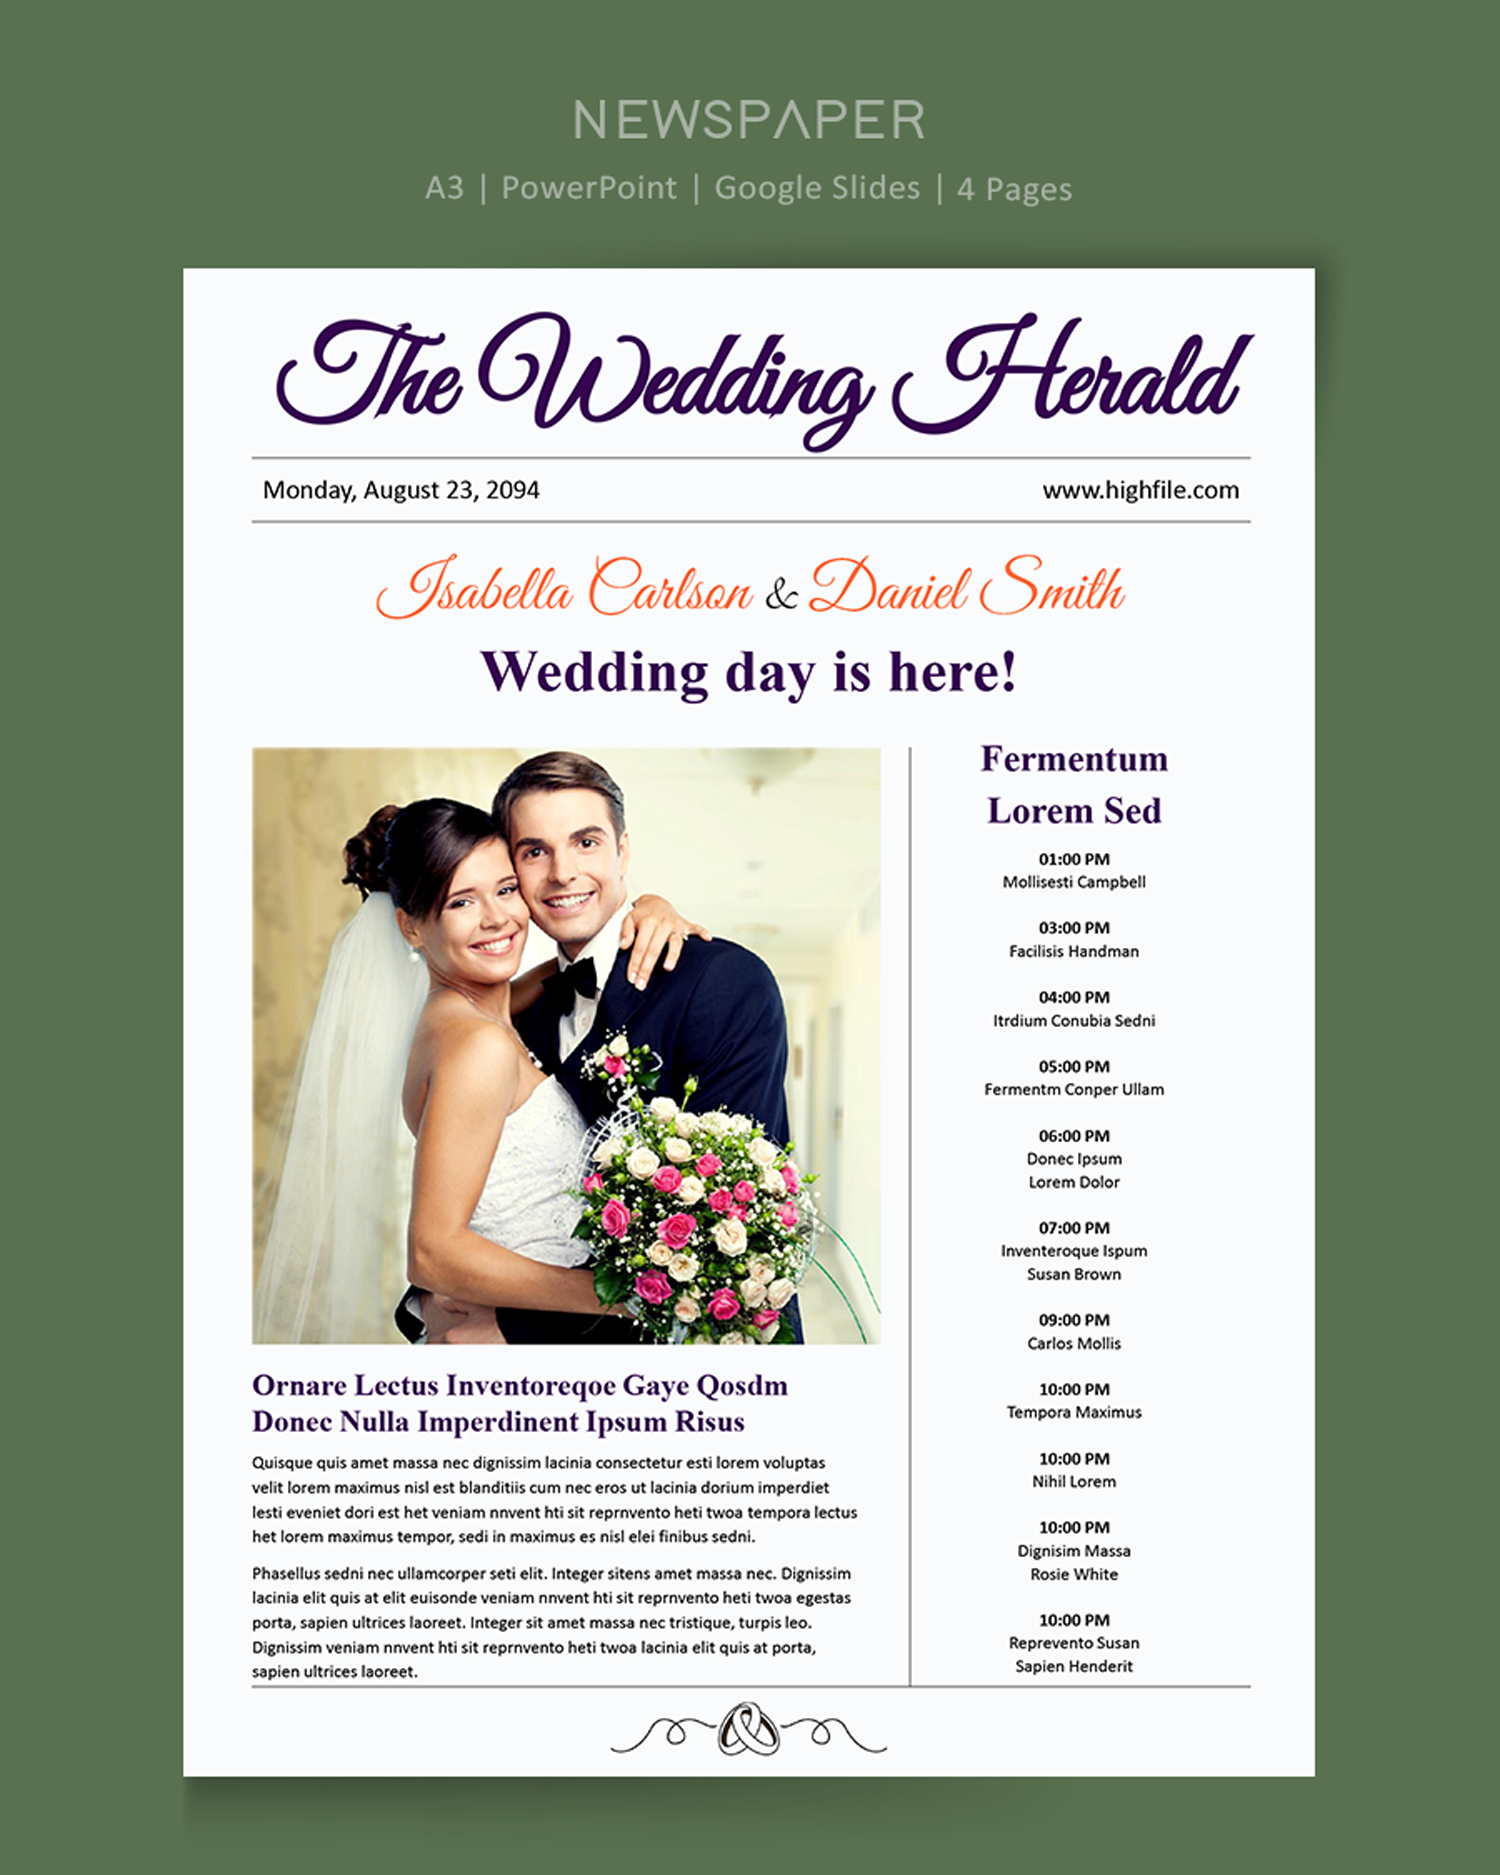 A3 Wedding Program Newspaper Template - PowerPoint, Google Slides